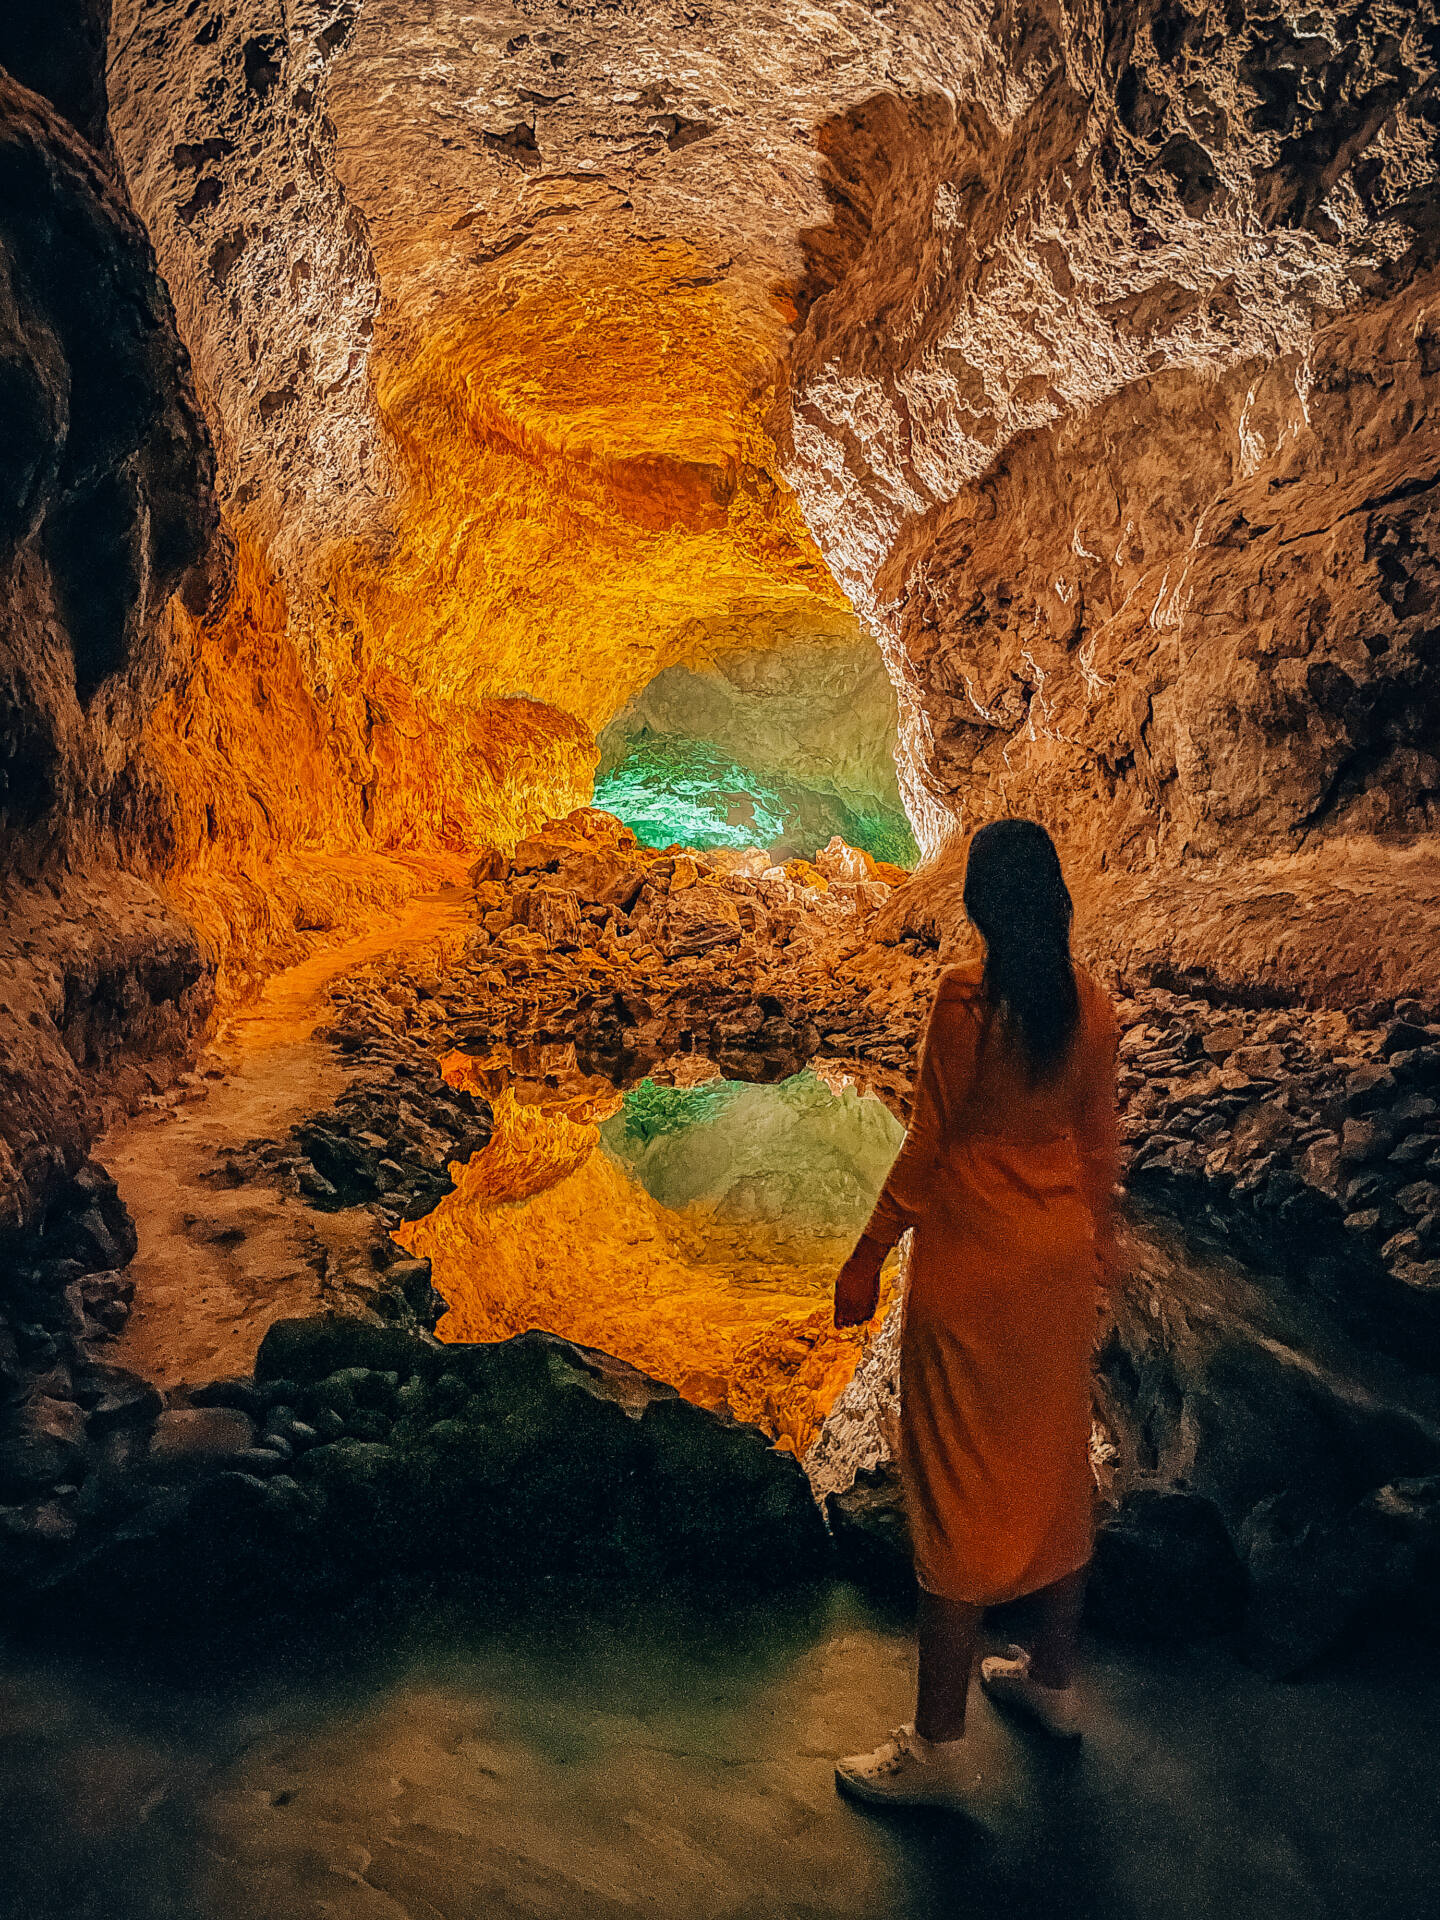 Cueva de los Verdes cave